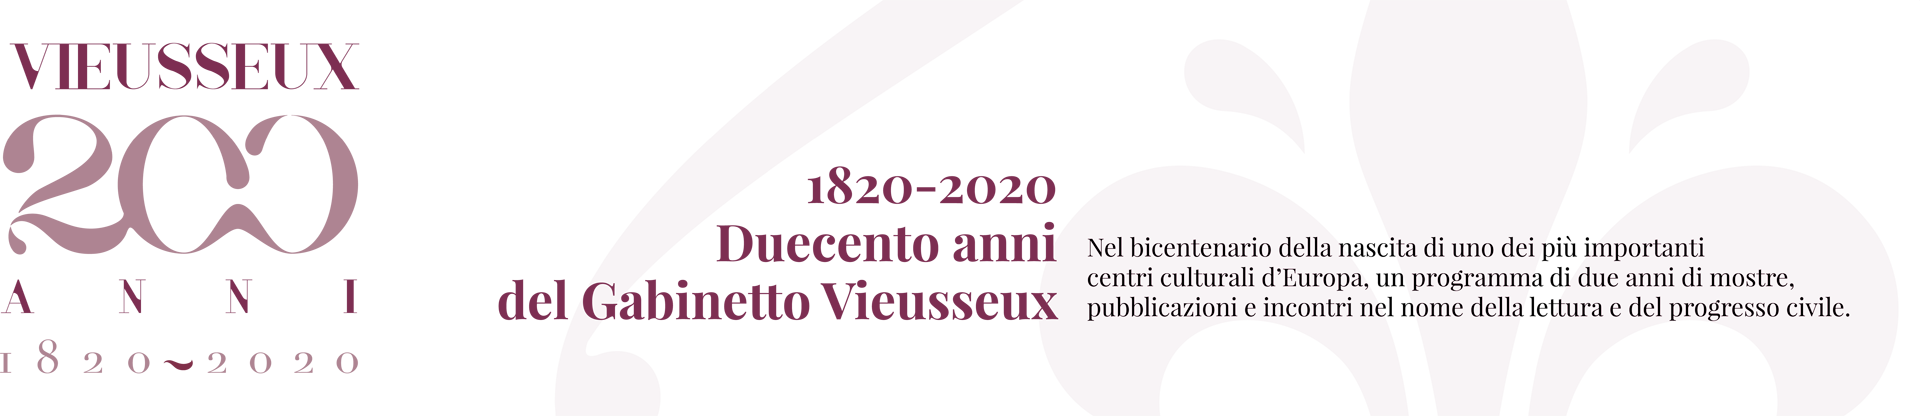 Banner 200 Anni Vieusseux